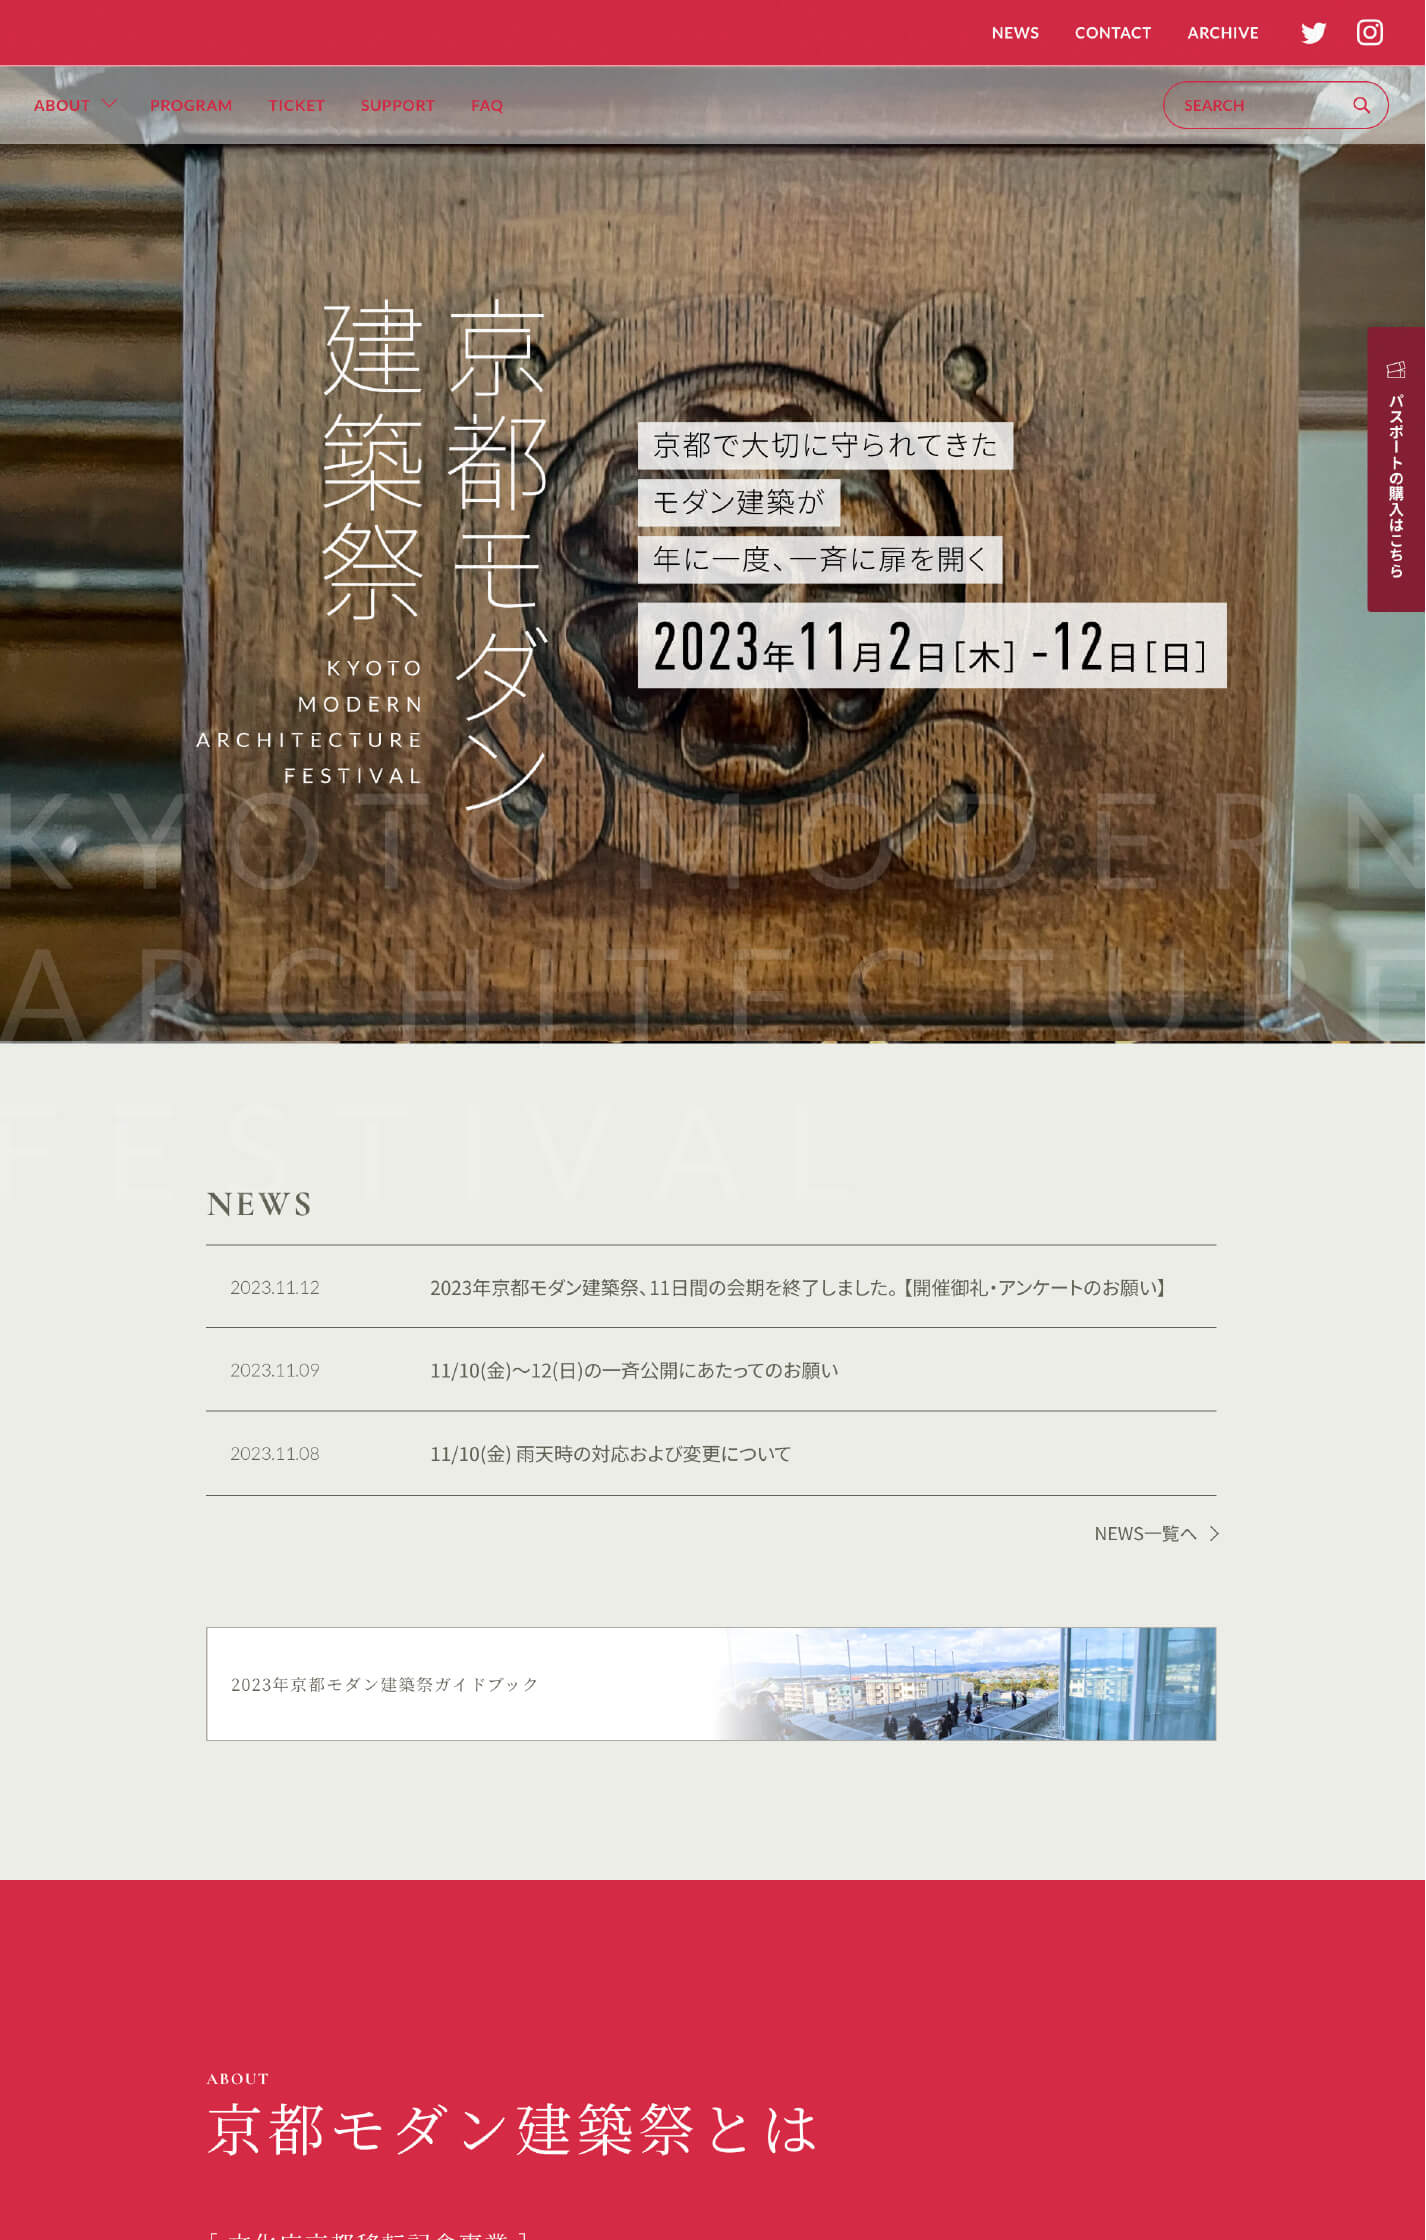 京都モダン建築祭 公式サイト